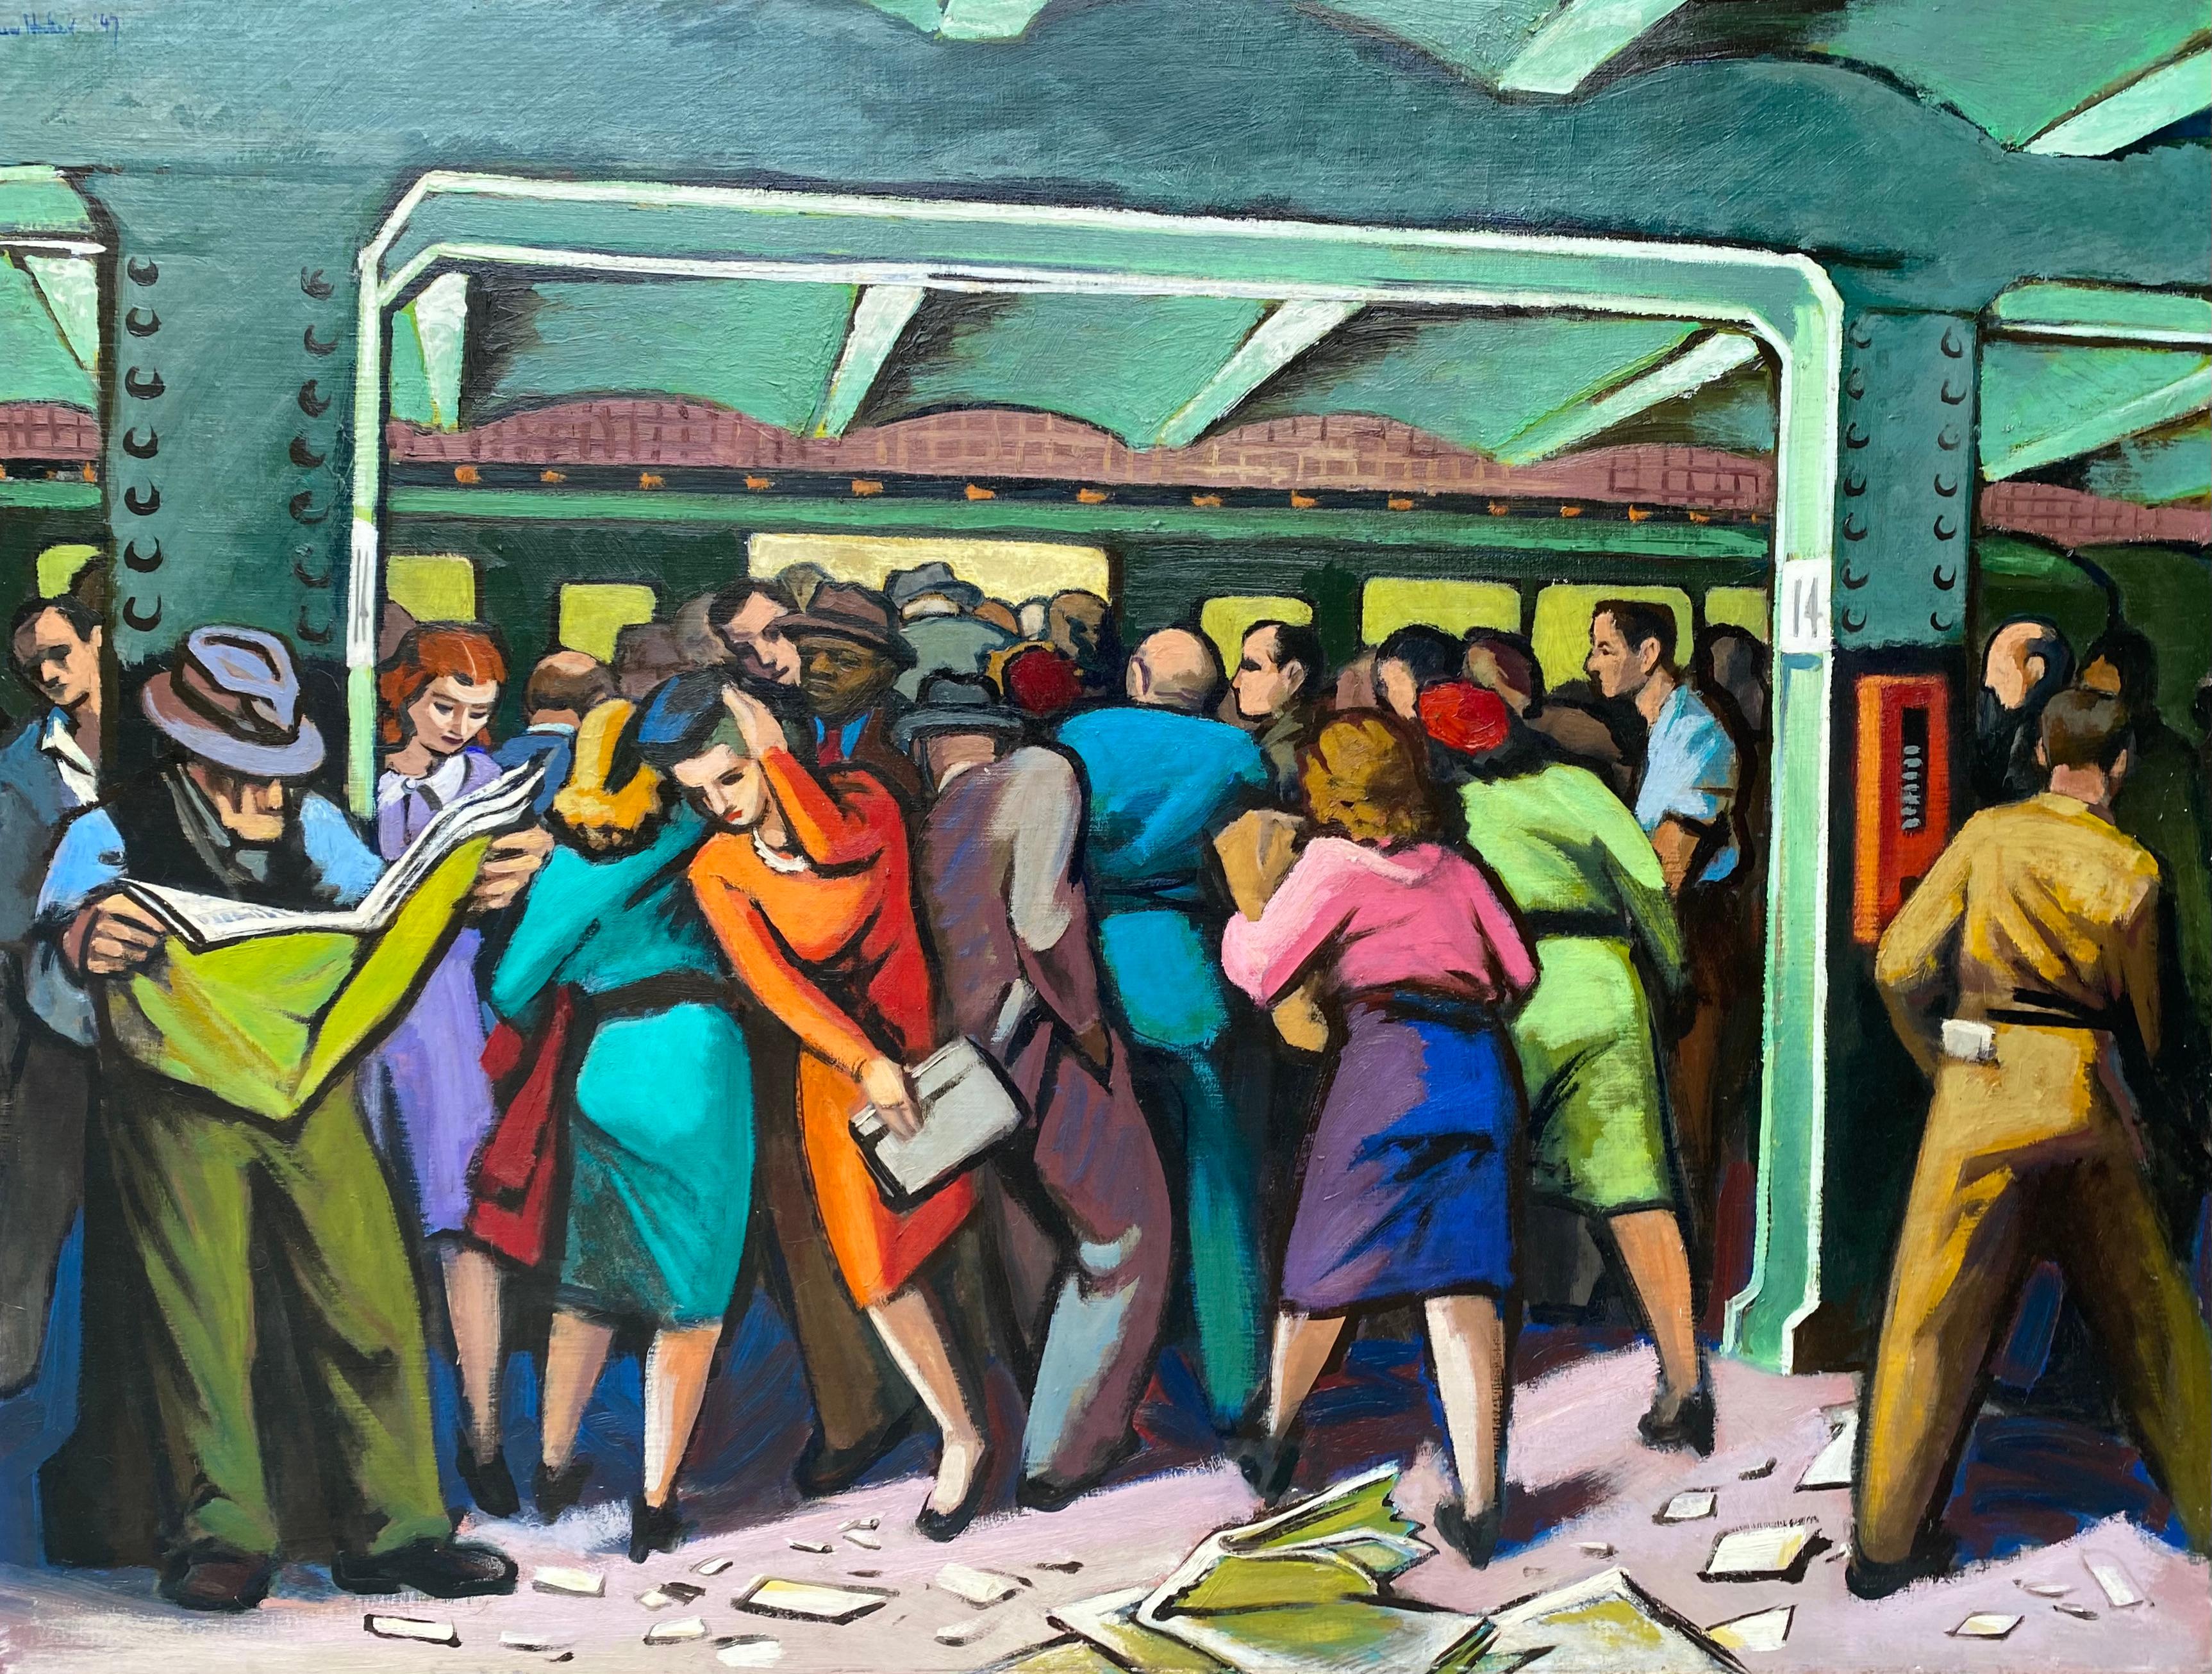 Modernisme américain du milieu du 20e siècle dans le métro de New York, réalisme industriel coloré du WPA